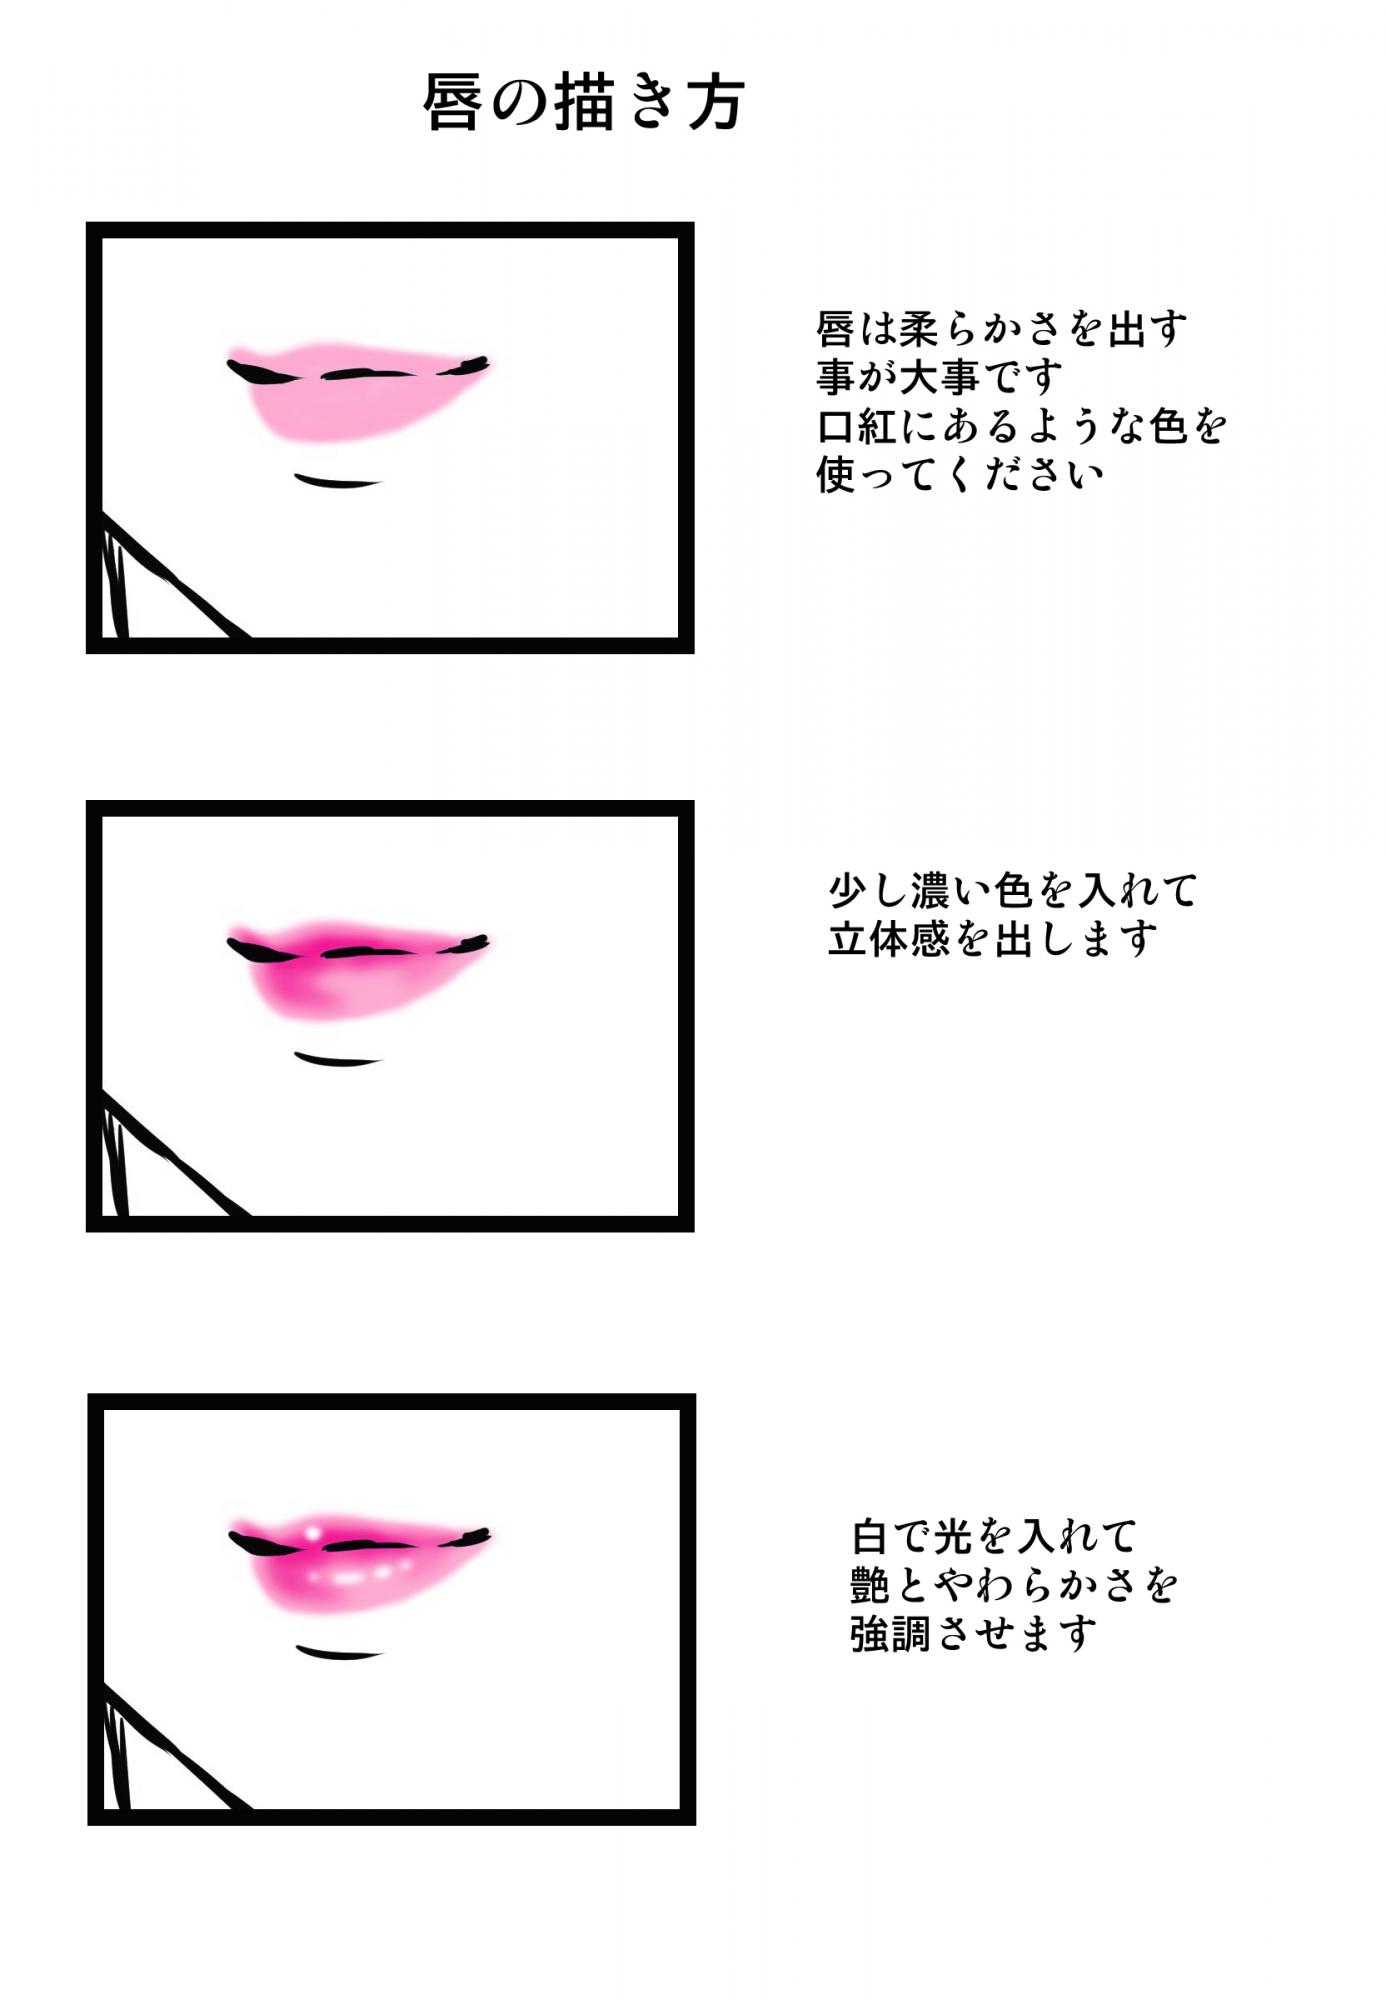 ④唇の描き方